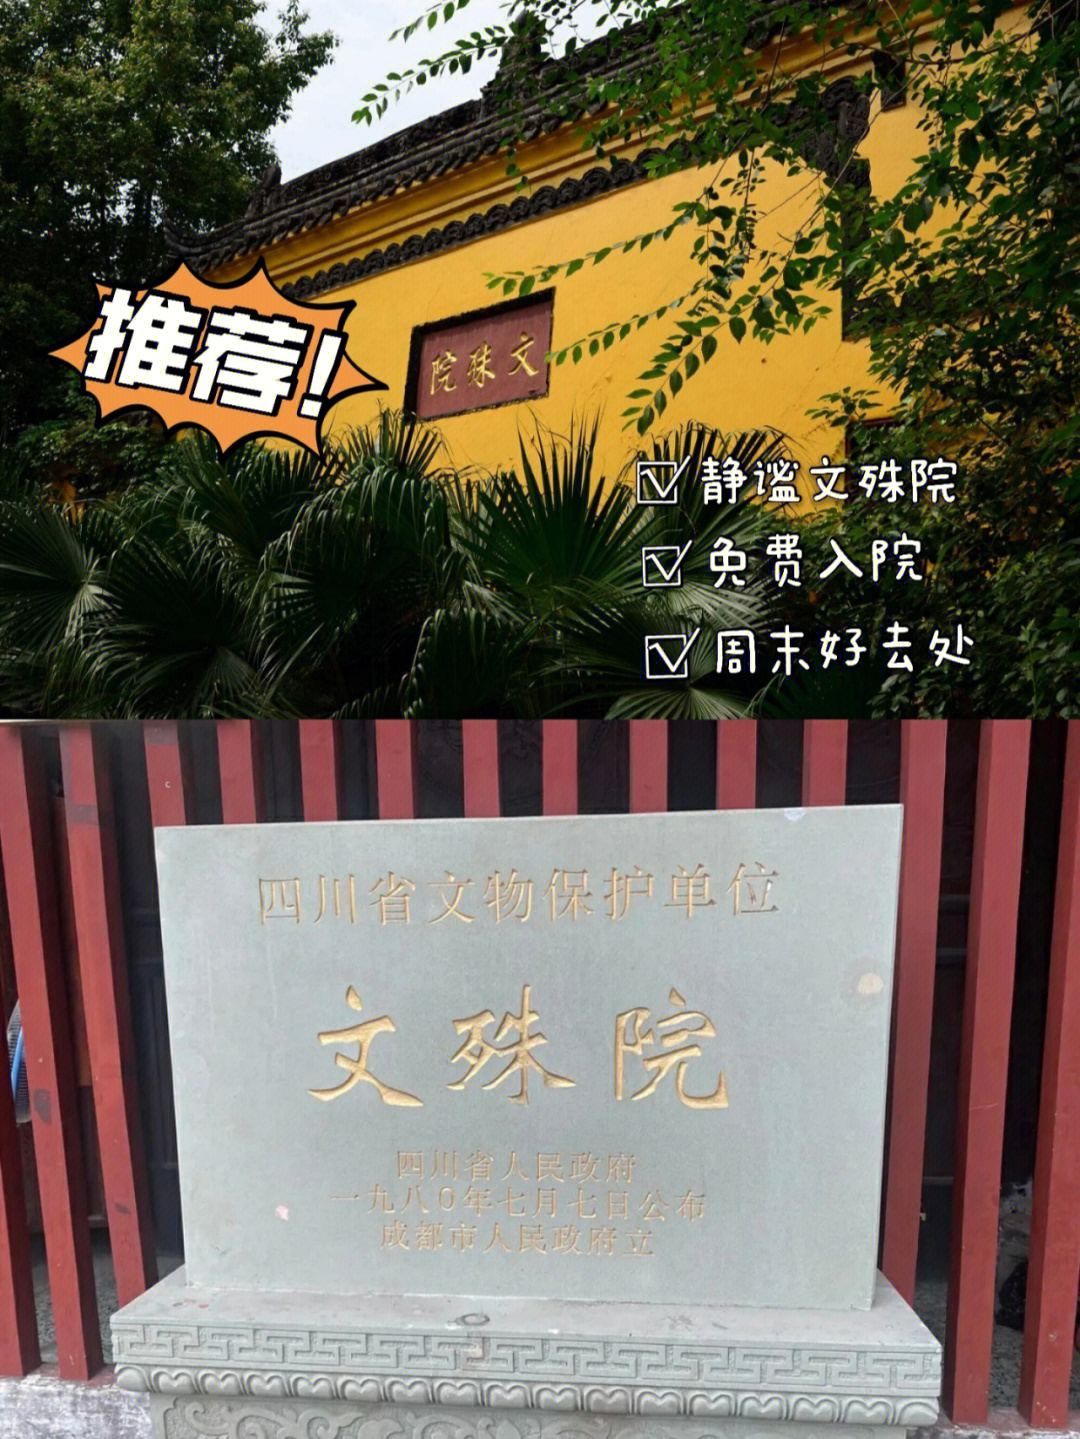 [1]是国务院确定的全国佛教重点寺院之一,中国长江上下游四大禅林之首